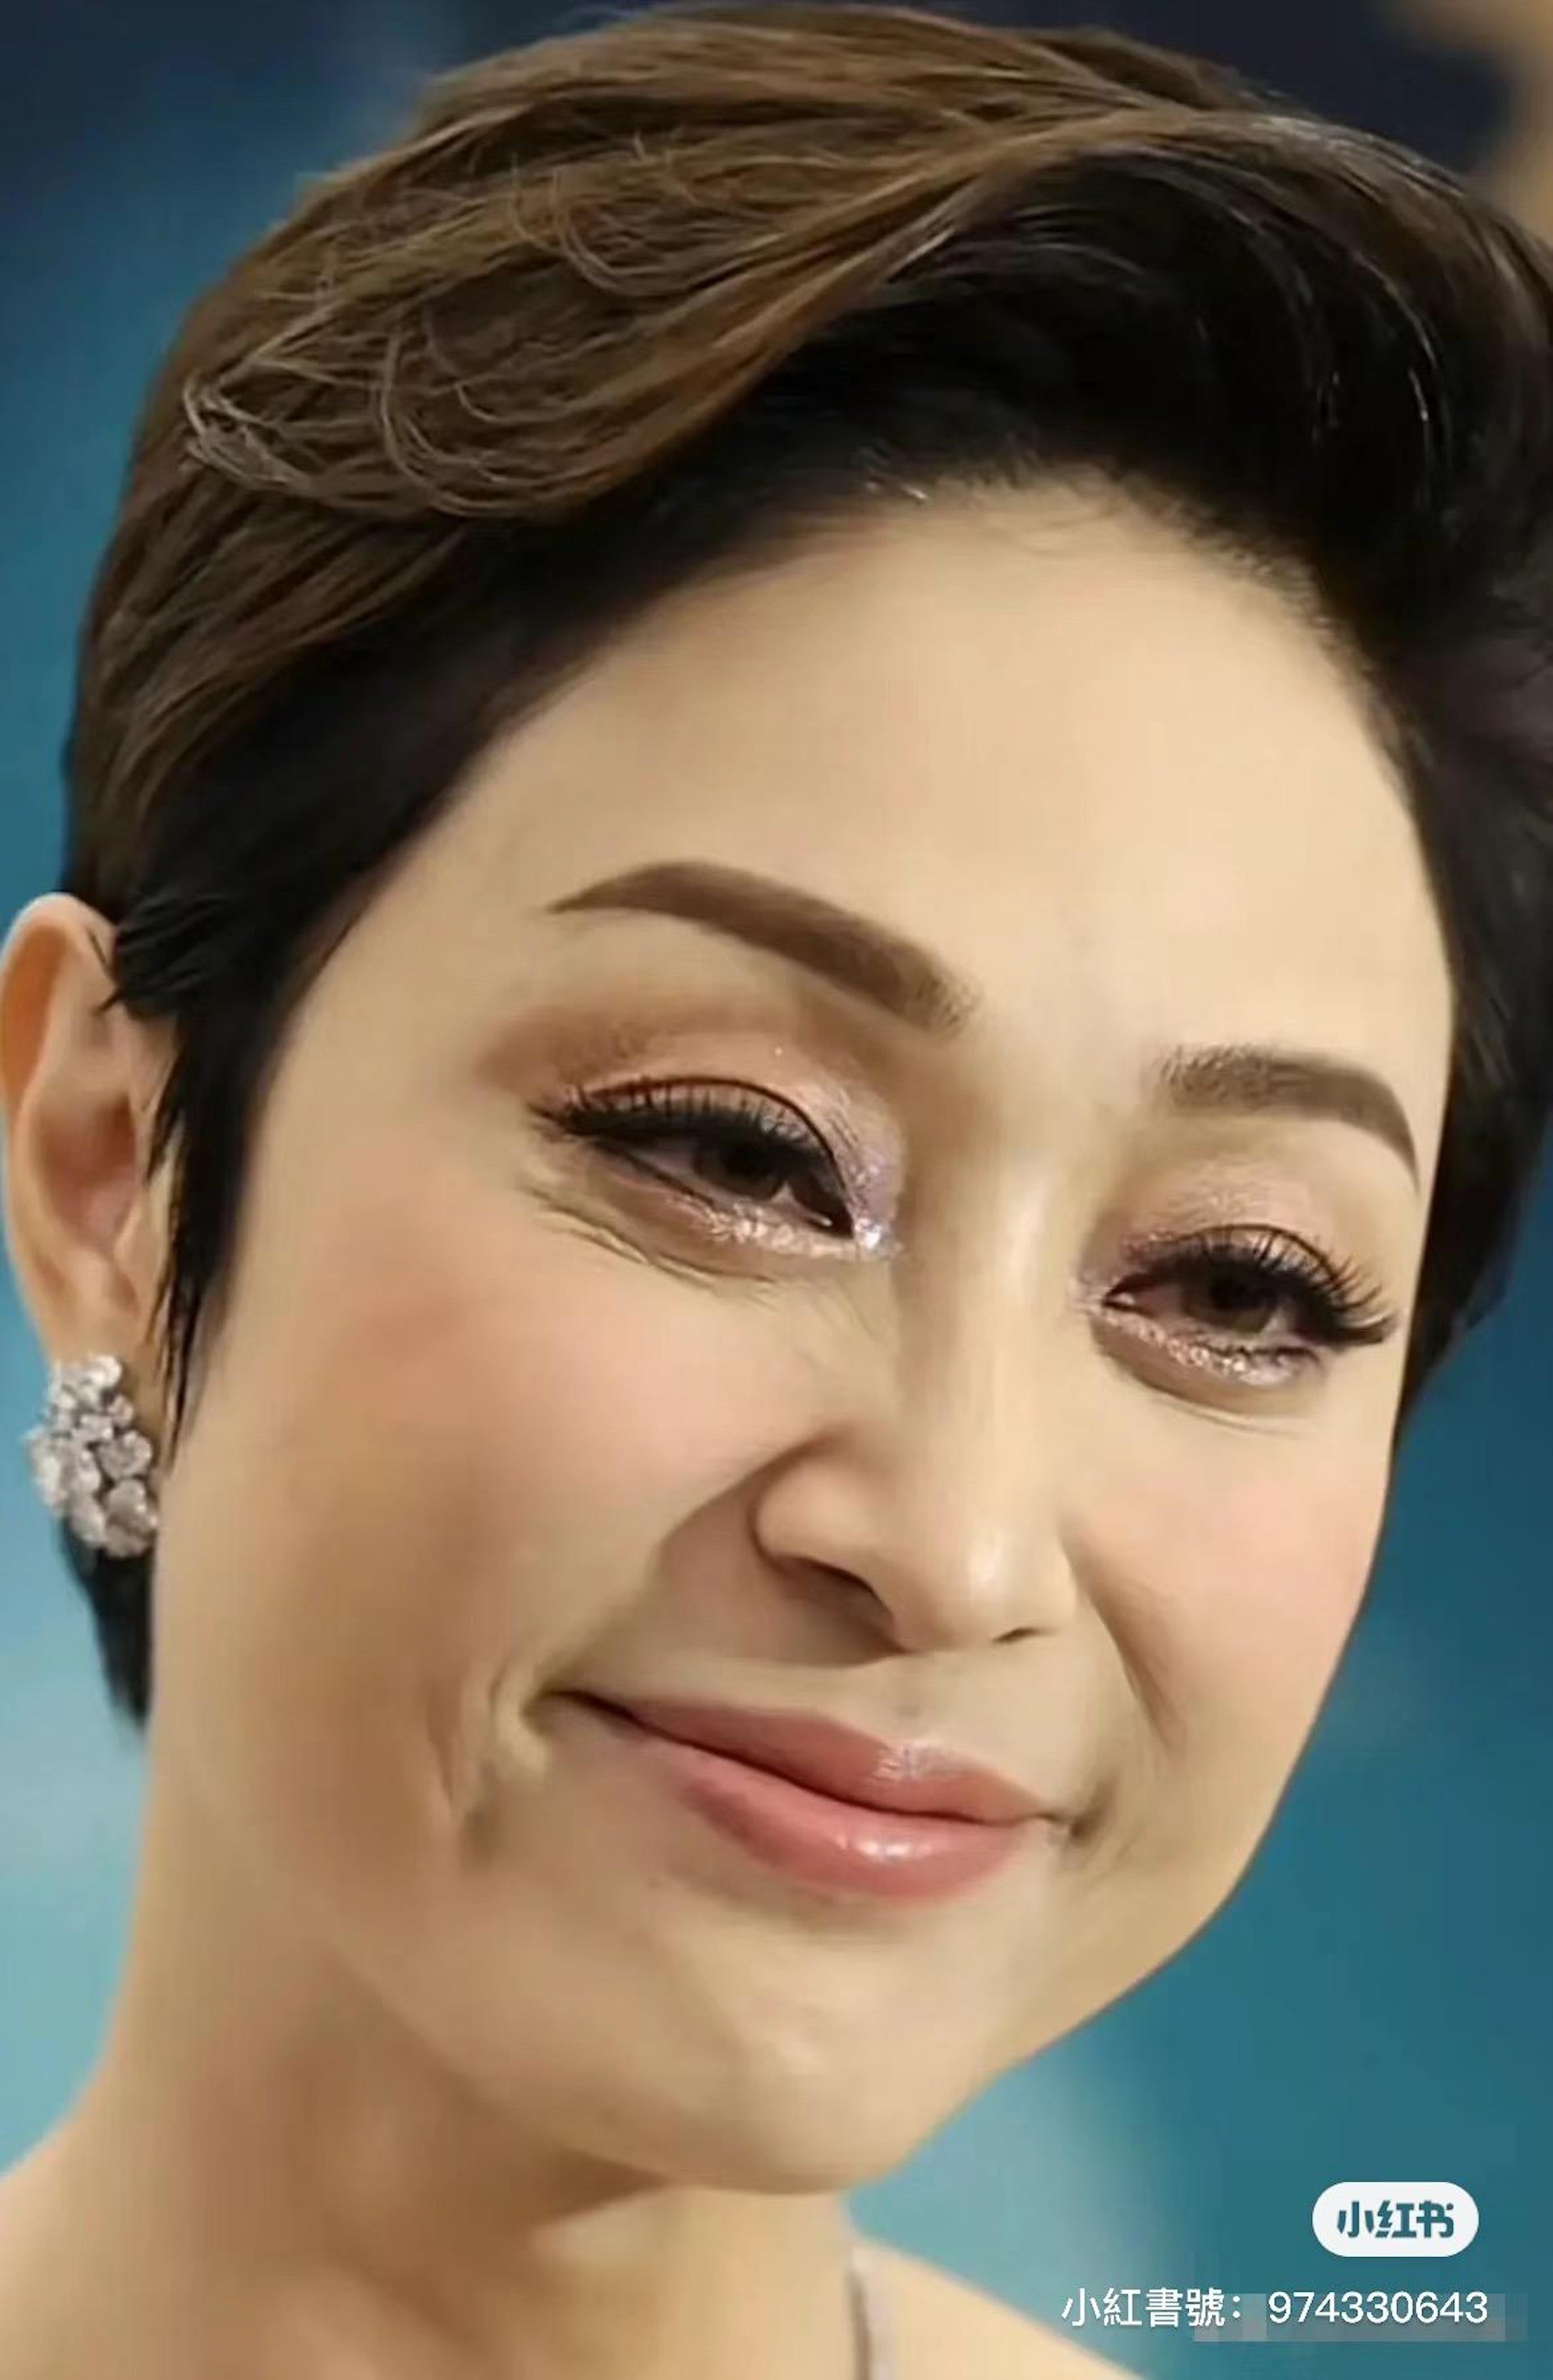 Nhan sắc tuổi 58 của hoa hậu tóc ngắn đẹp nhất Hong Kong ảnh 3